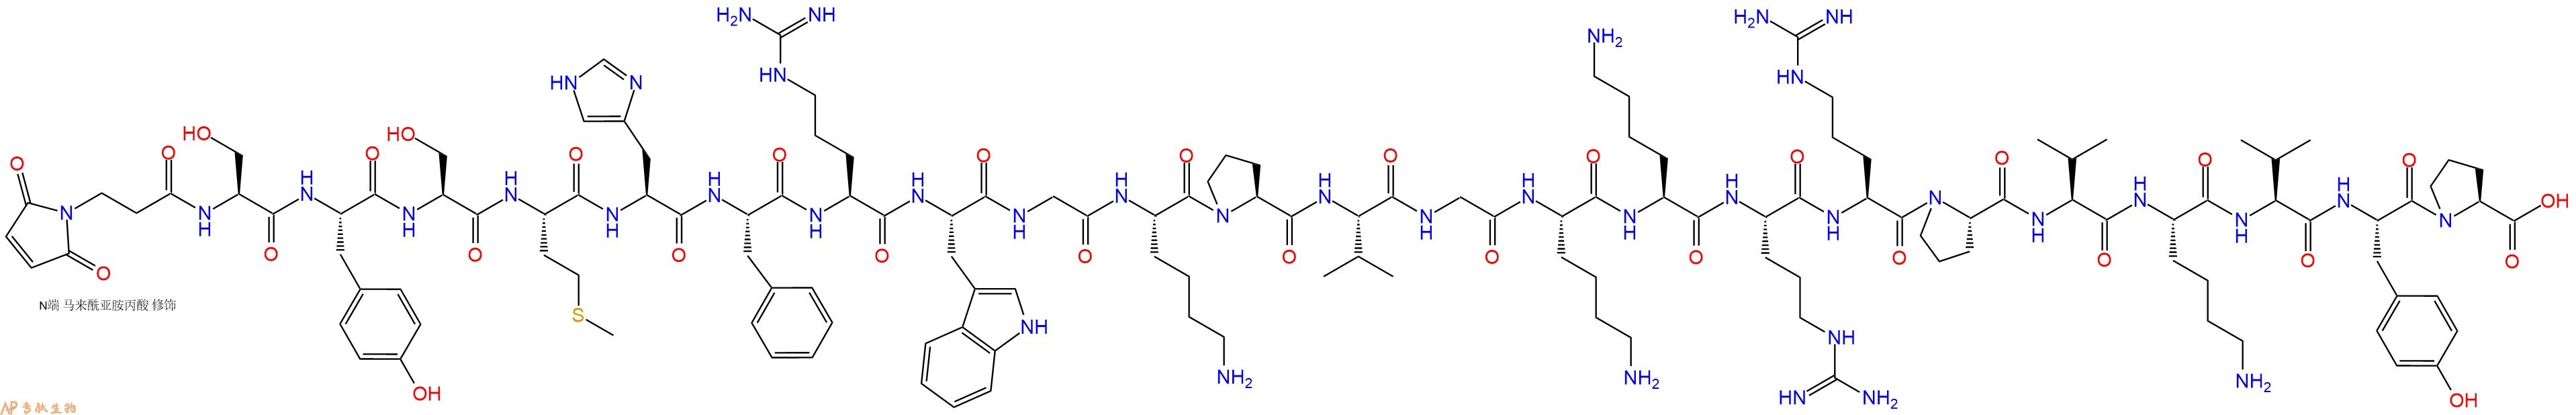 专肽生物产品3Mal-Ser-Tyr-Ser-Met-His-Phe-Arg-Trp-Gly-Lys-Pro-V